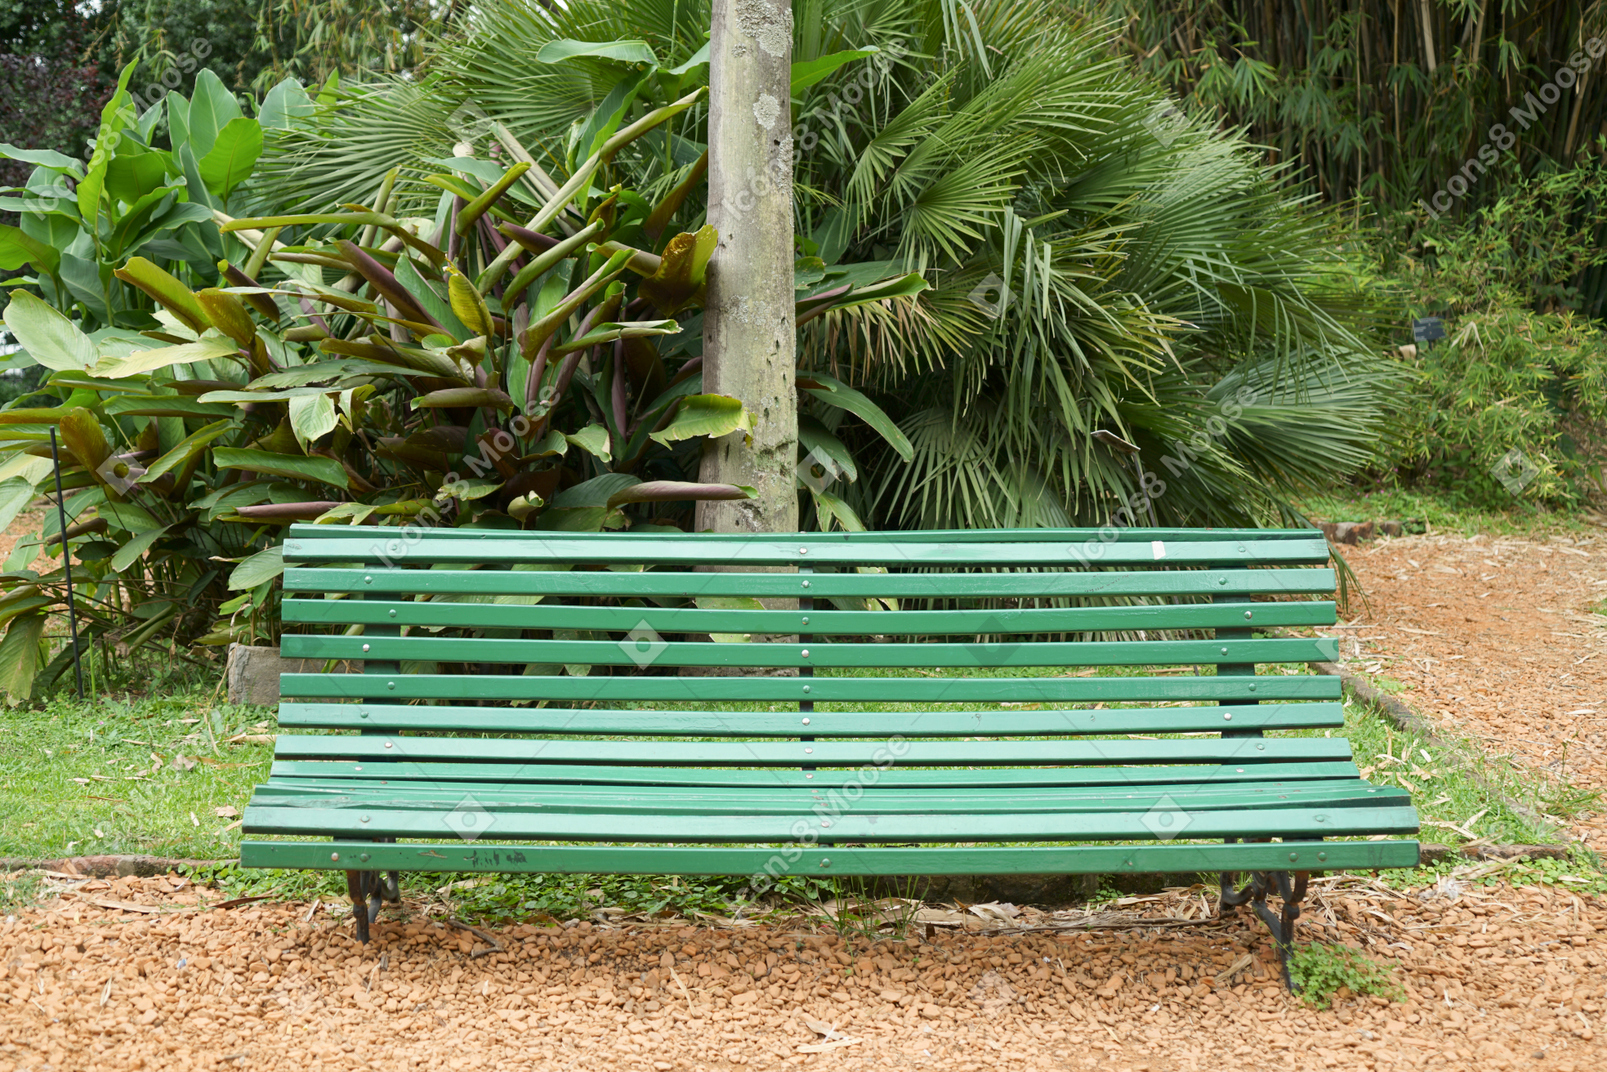 在庭院道路的绿色长凳在一棵大植物附近